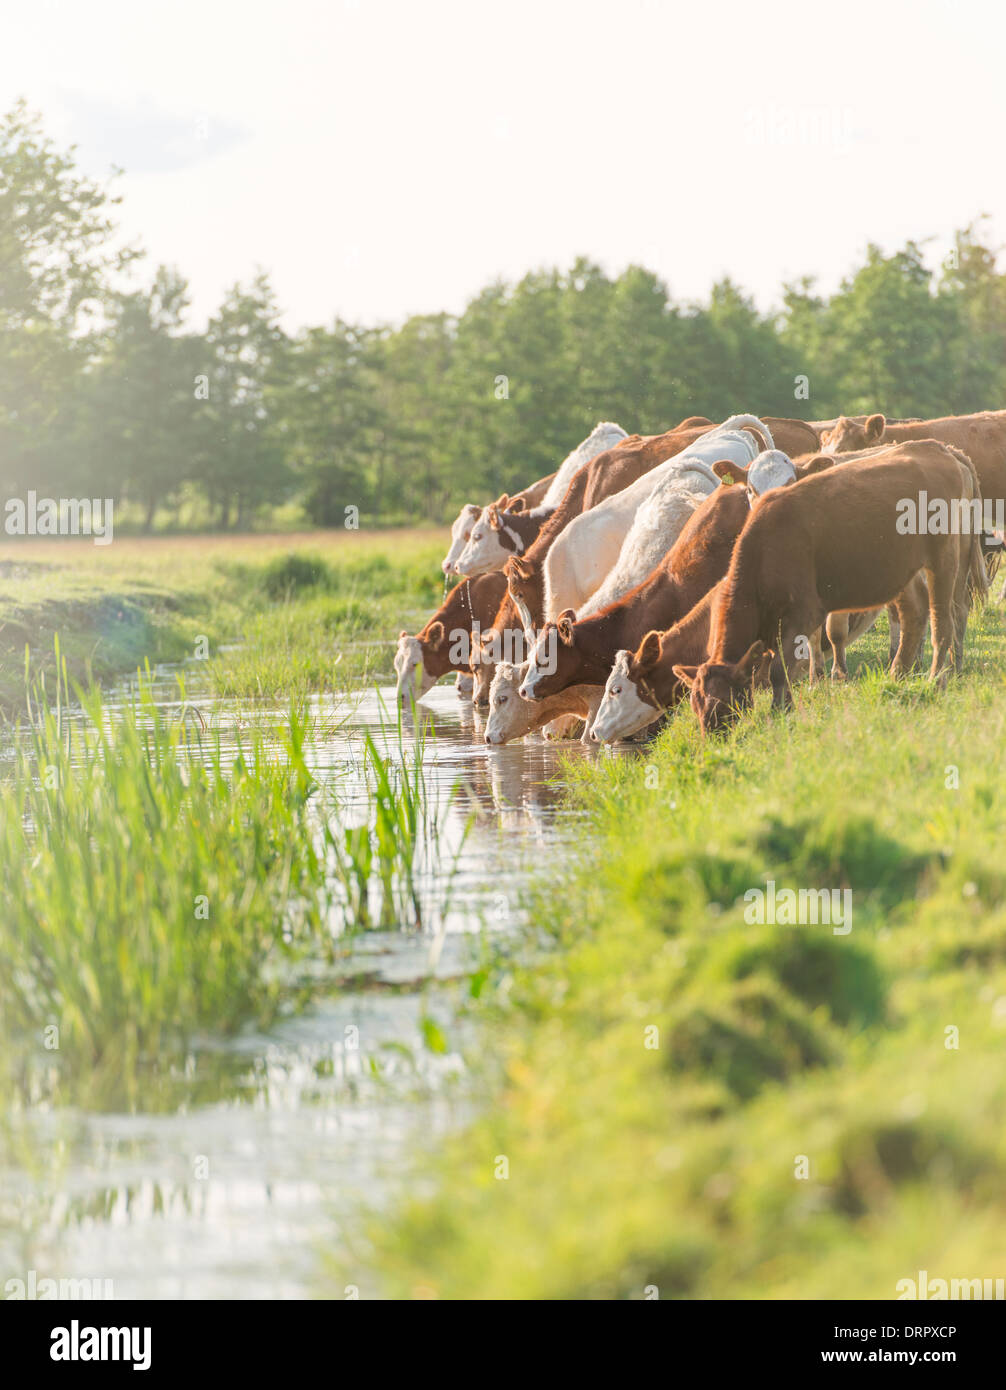 Rebaño de vacas en pasto de beber agua de un río, Suecia Foto de stock